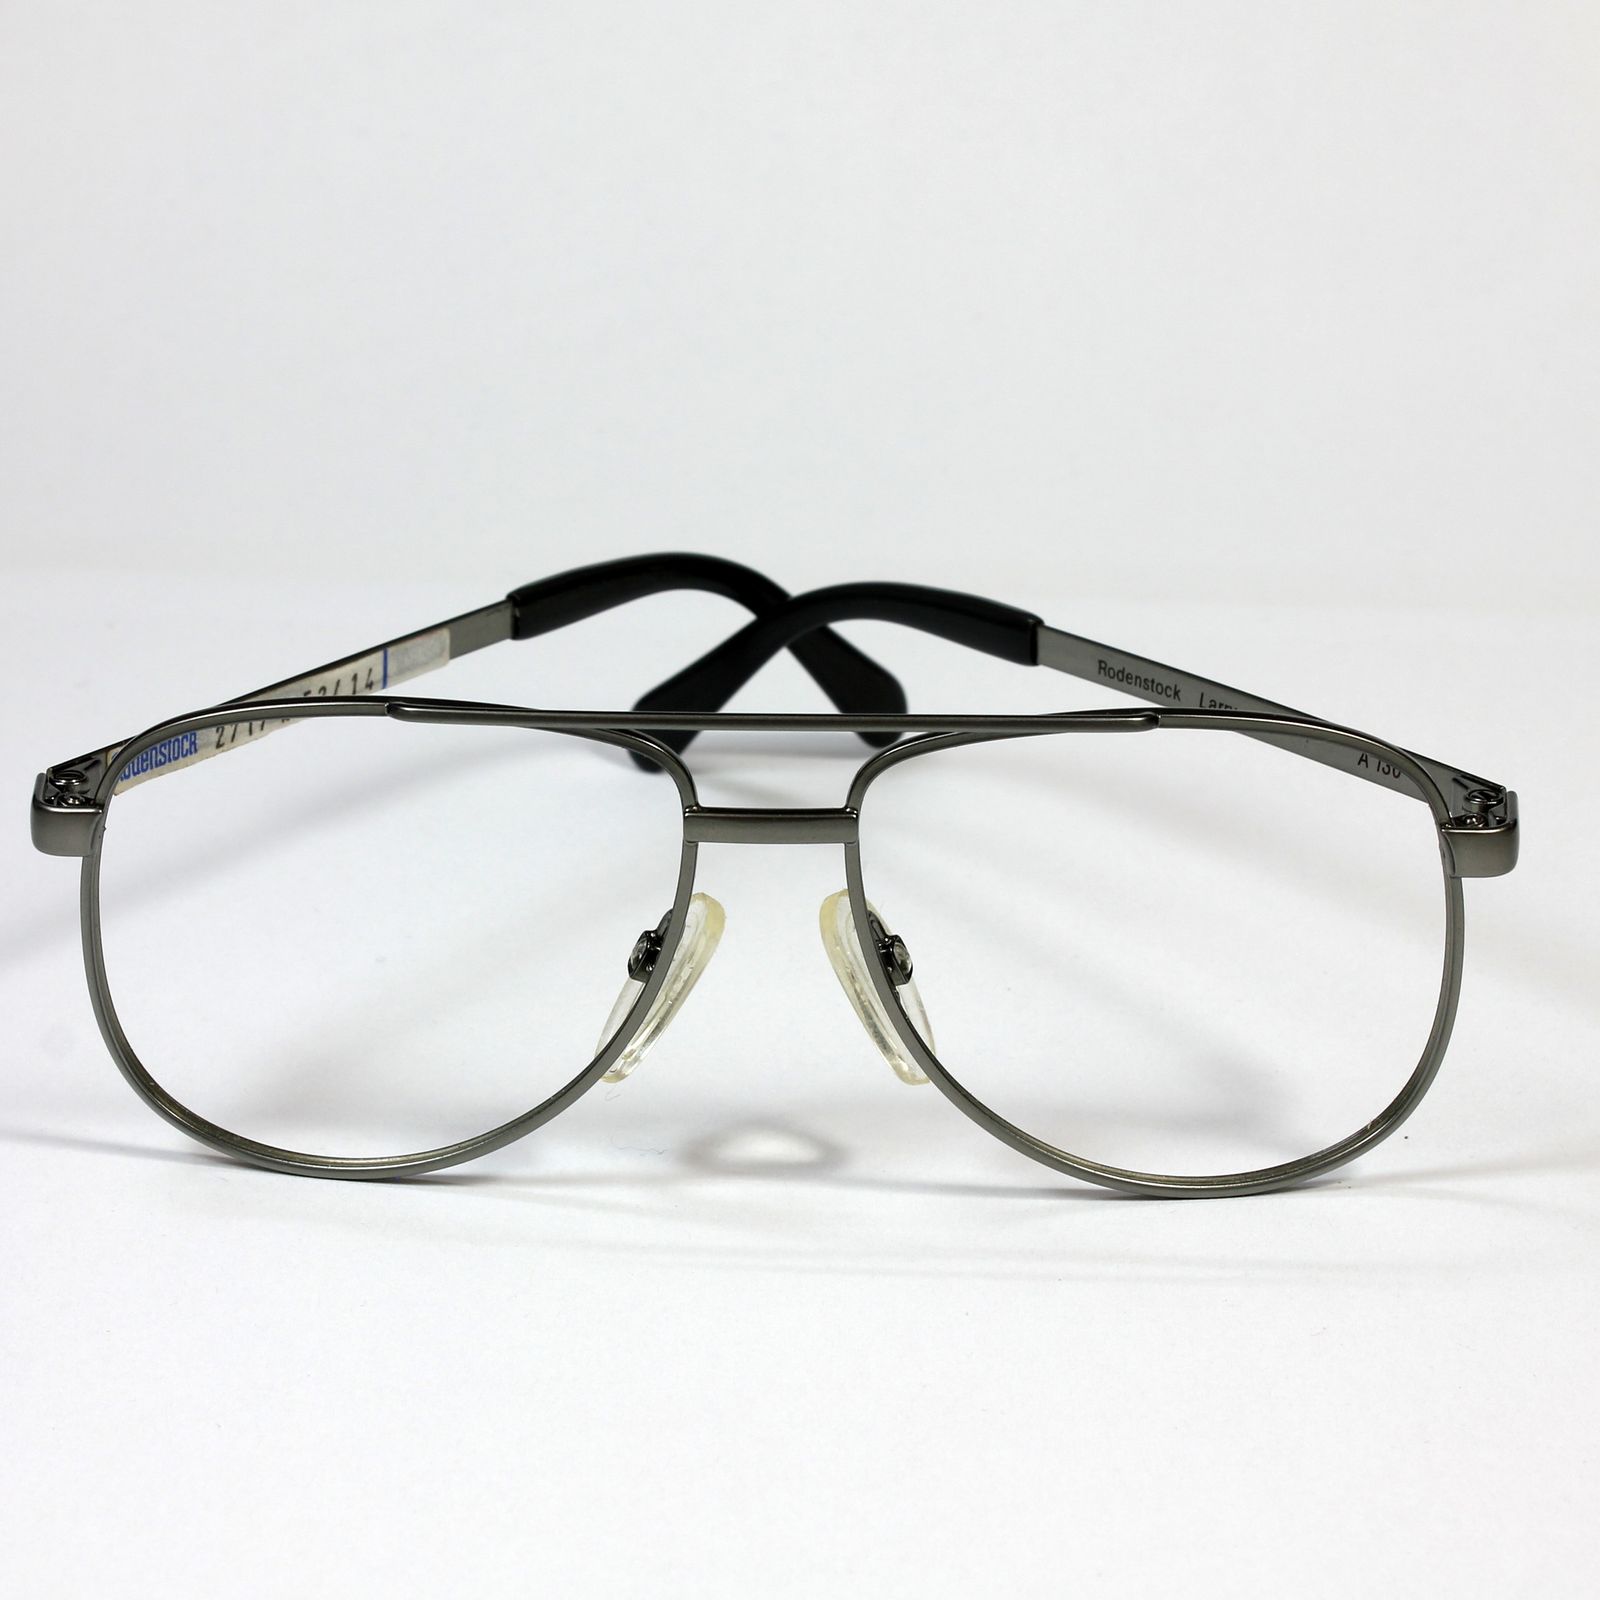 فریم عینک طبی رودن اشتوک مدل 2717 -  - 3